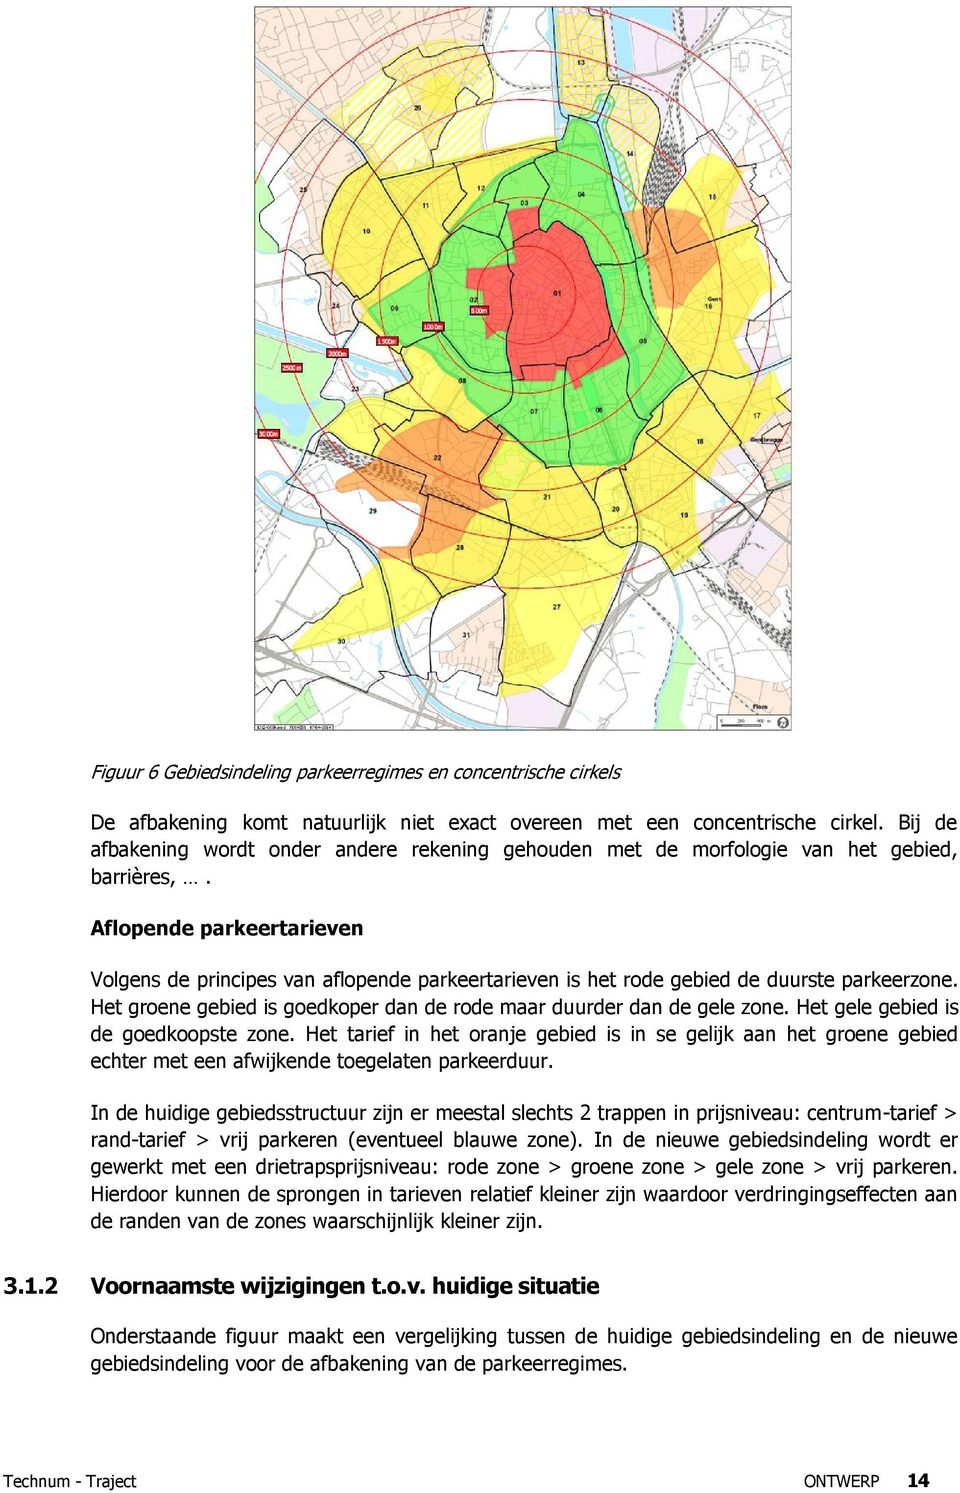 Aflopende parkeertarieven Volgens de principes van aflopende parkeertarieven is het rode gebied de duurste parkeerzone. Het groene gebied is goedkoper dan de rode maar duurder dan de gele zone.